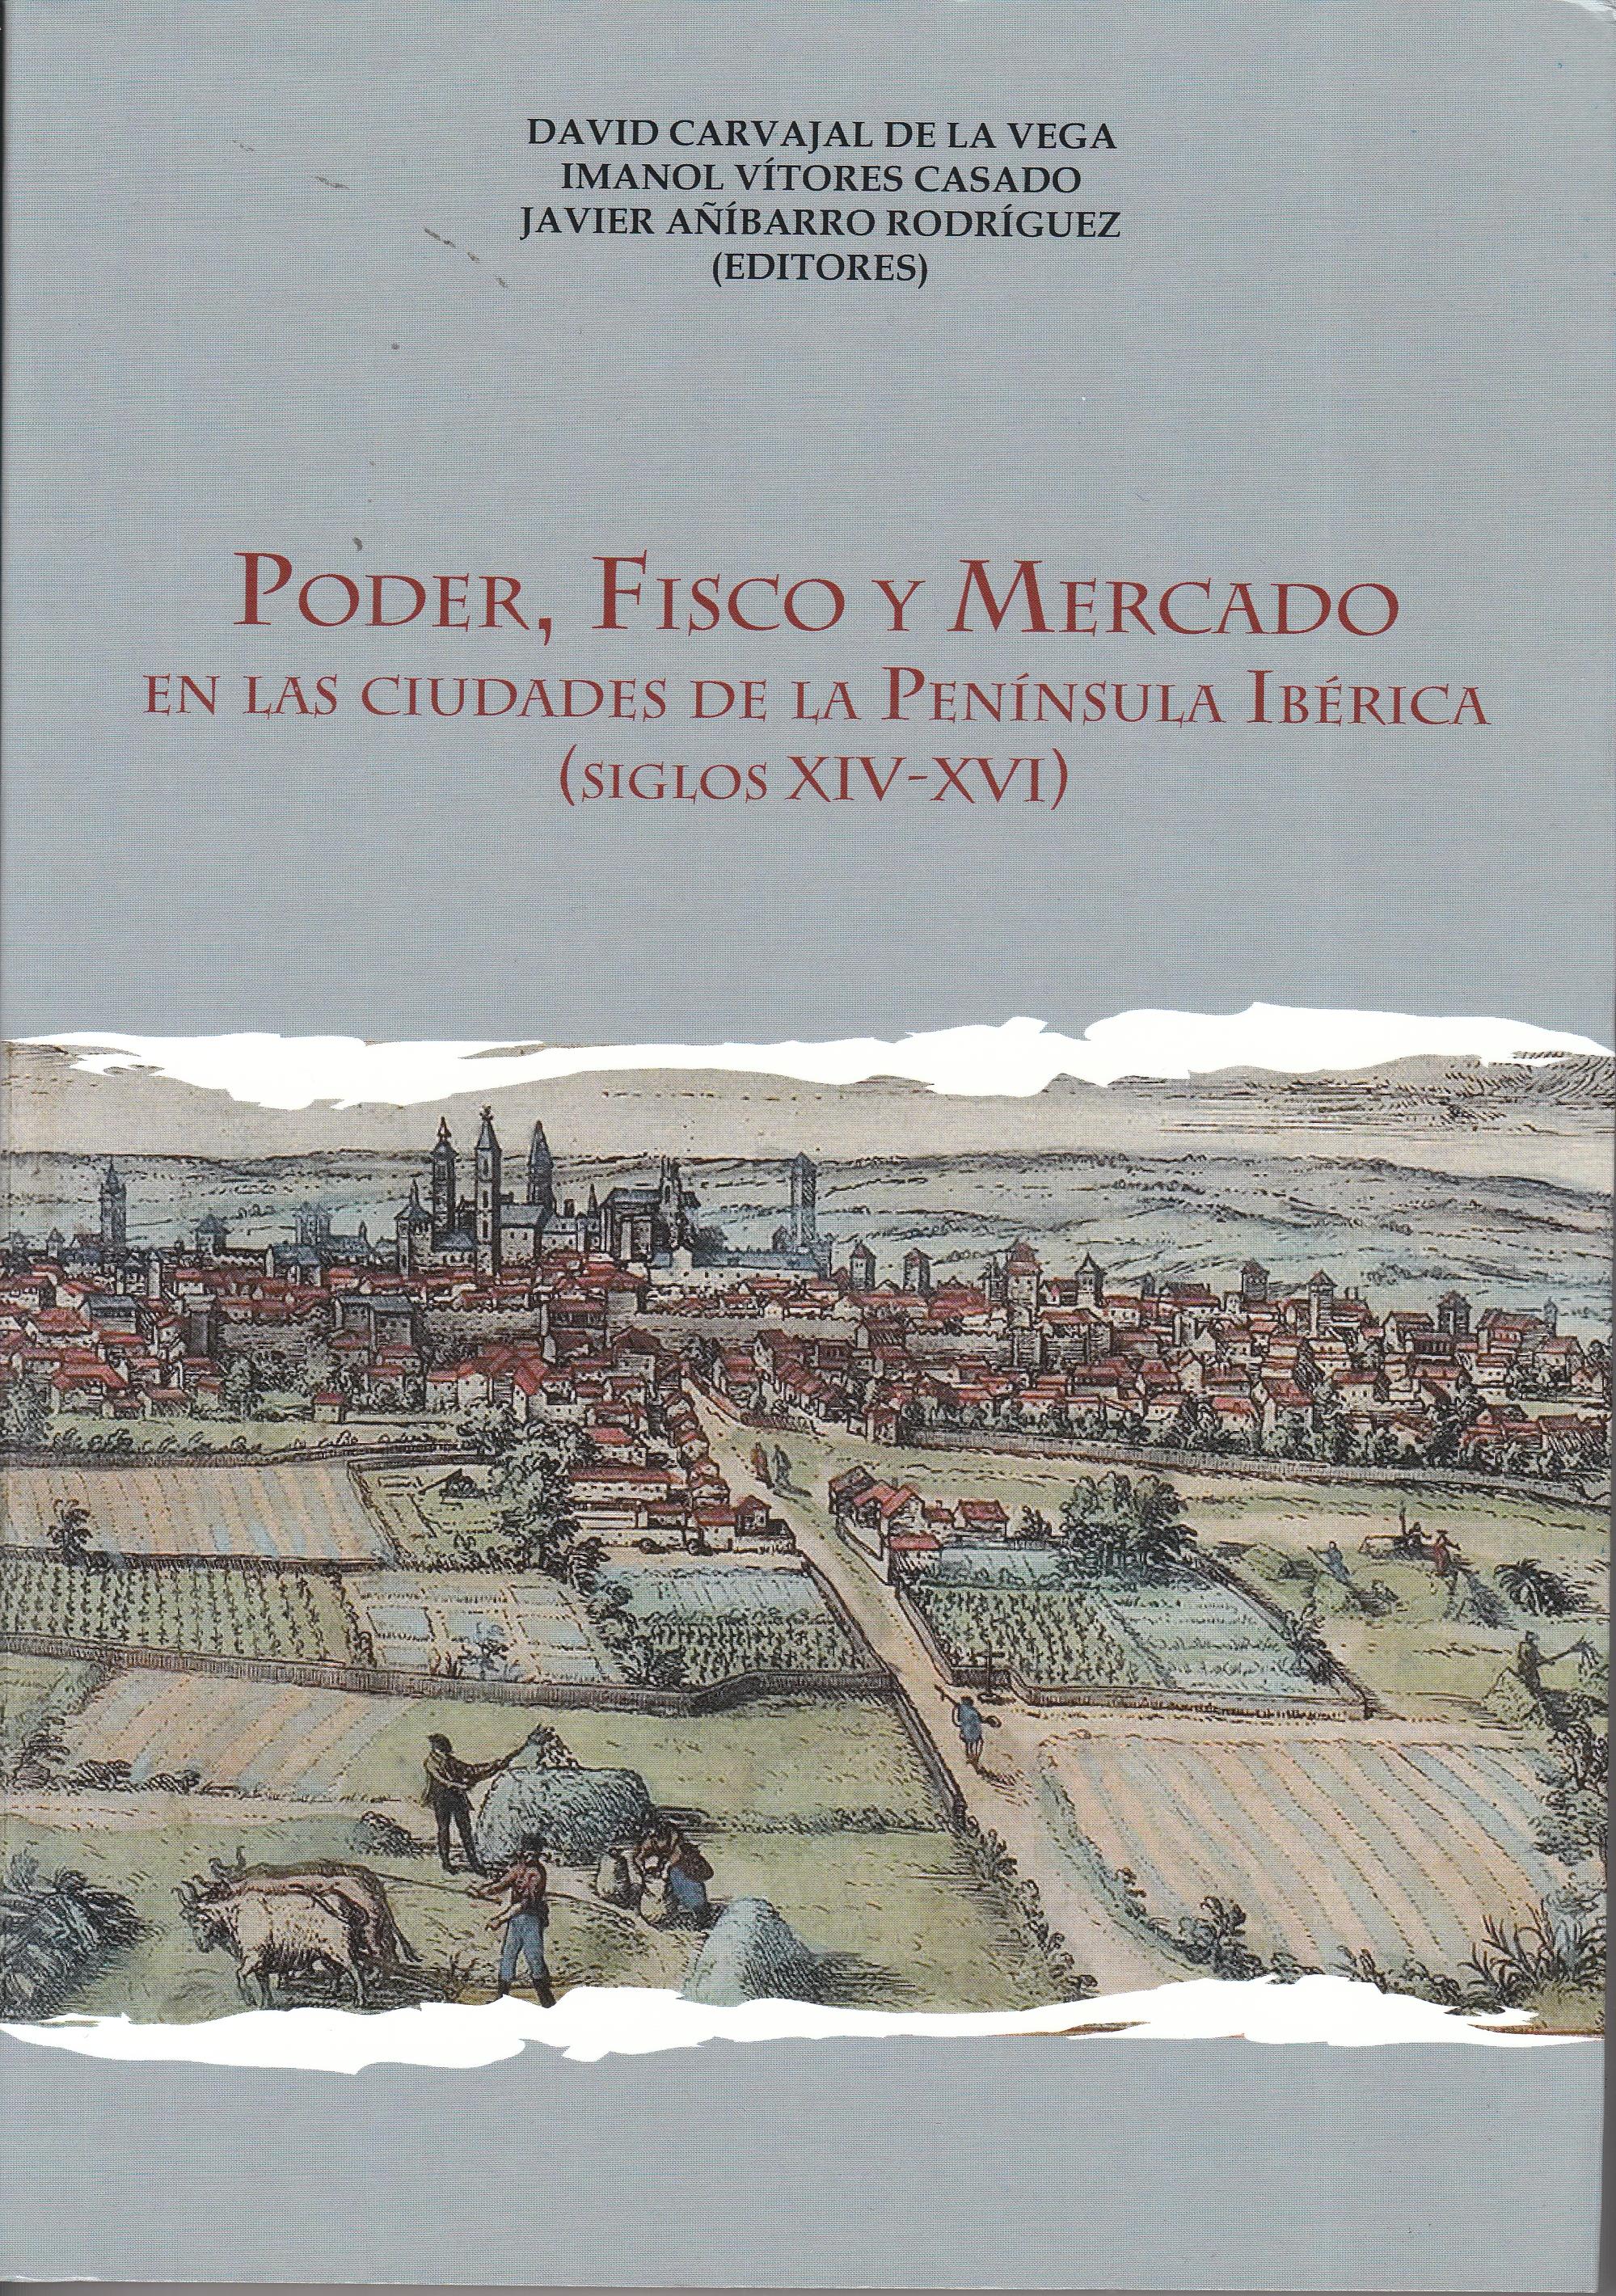 Poder, Fisco y Mercado "En las ciudades de la Península Ibérica (Siglos XIV-XVI)"